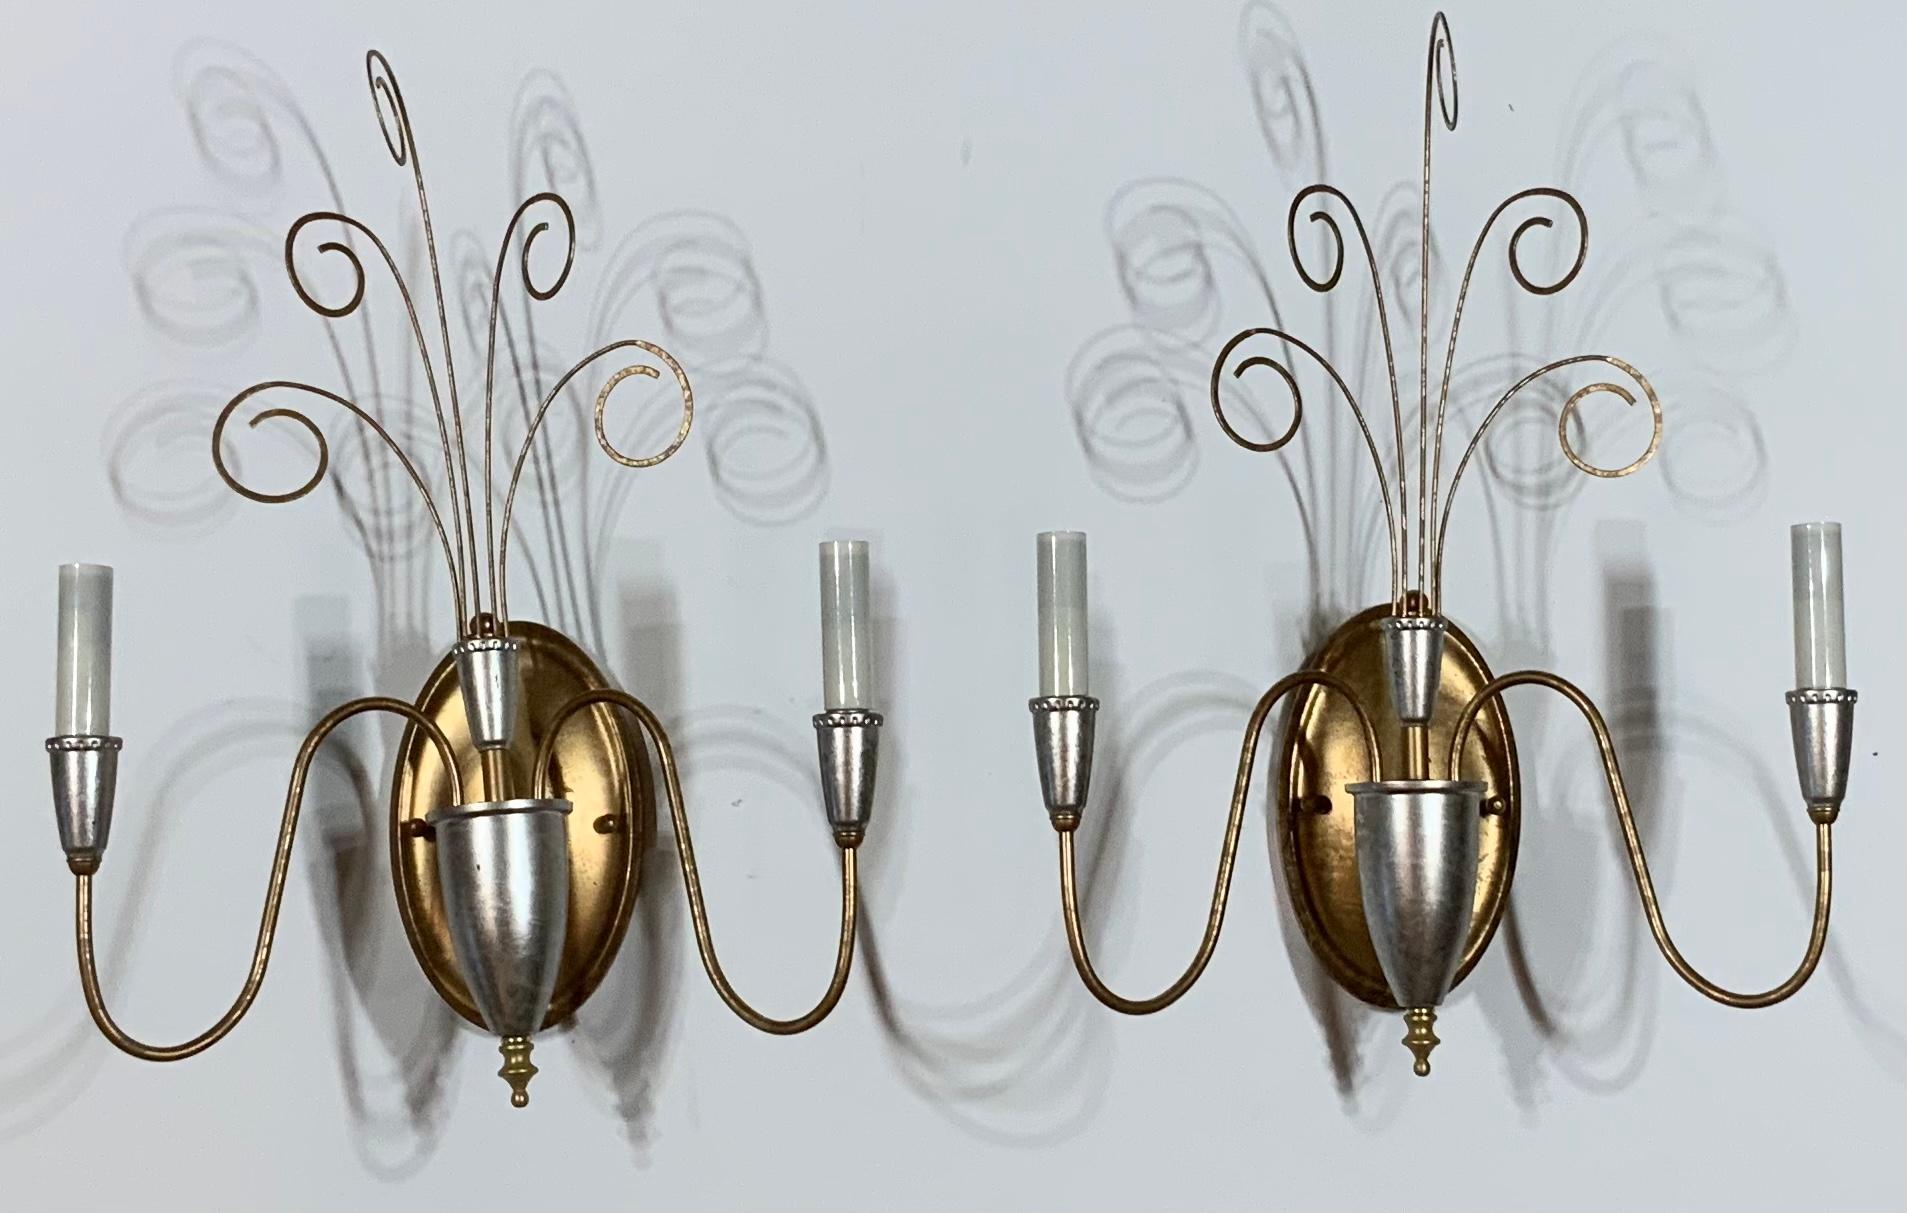 Elegantes Paar Wandleuchten aus Metall, lackiert in Silber und Gold, mit zwei 60-Watt-Lampen pro Leuchte
Elektrifiziert und einsatzbereit. Schönes und sauber geschnittenes Paar für die Wand.
Ein weiteres Paar wird veröffentlicht.
    